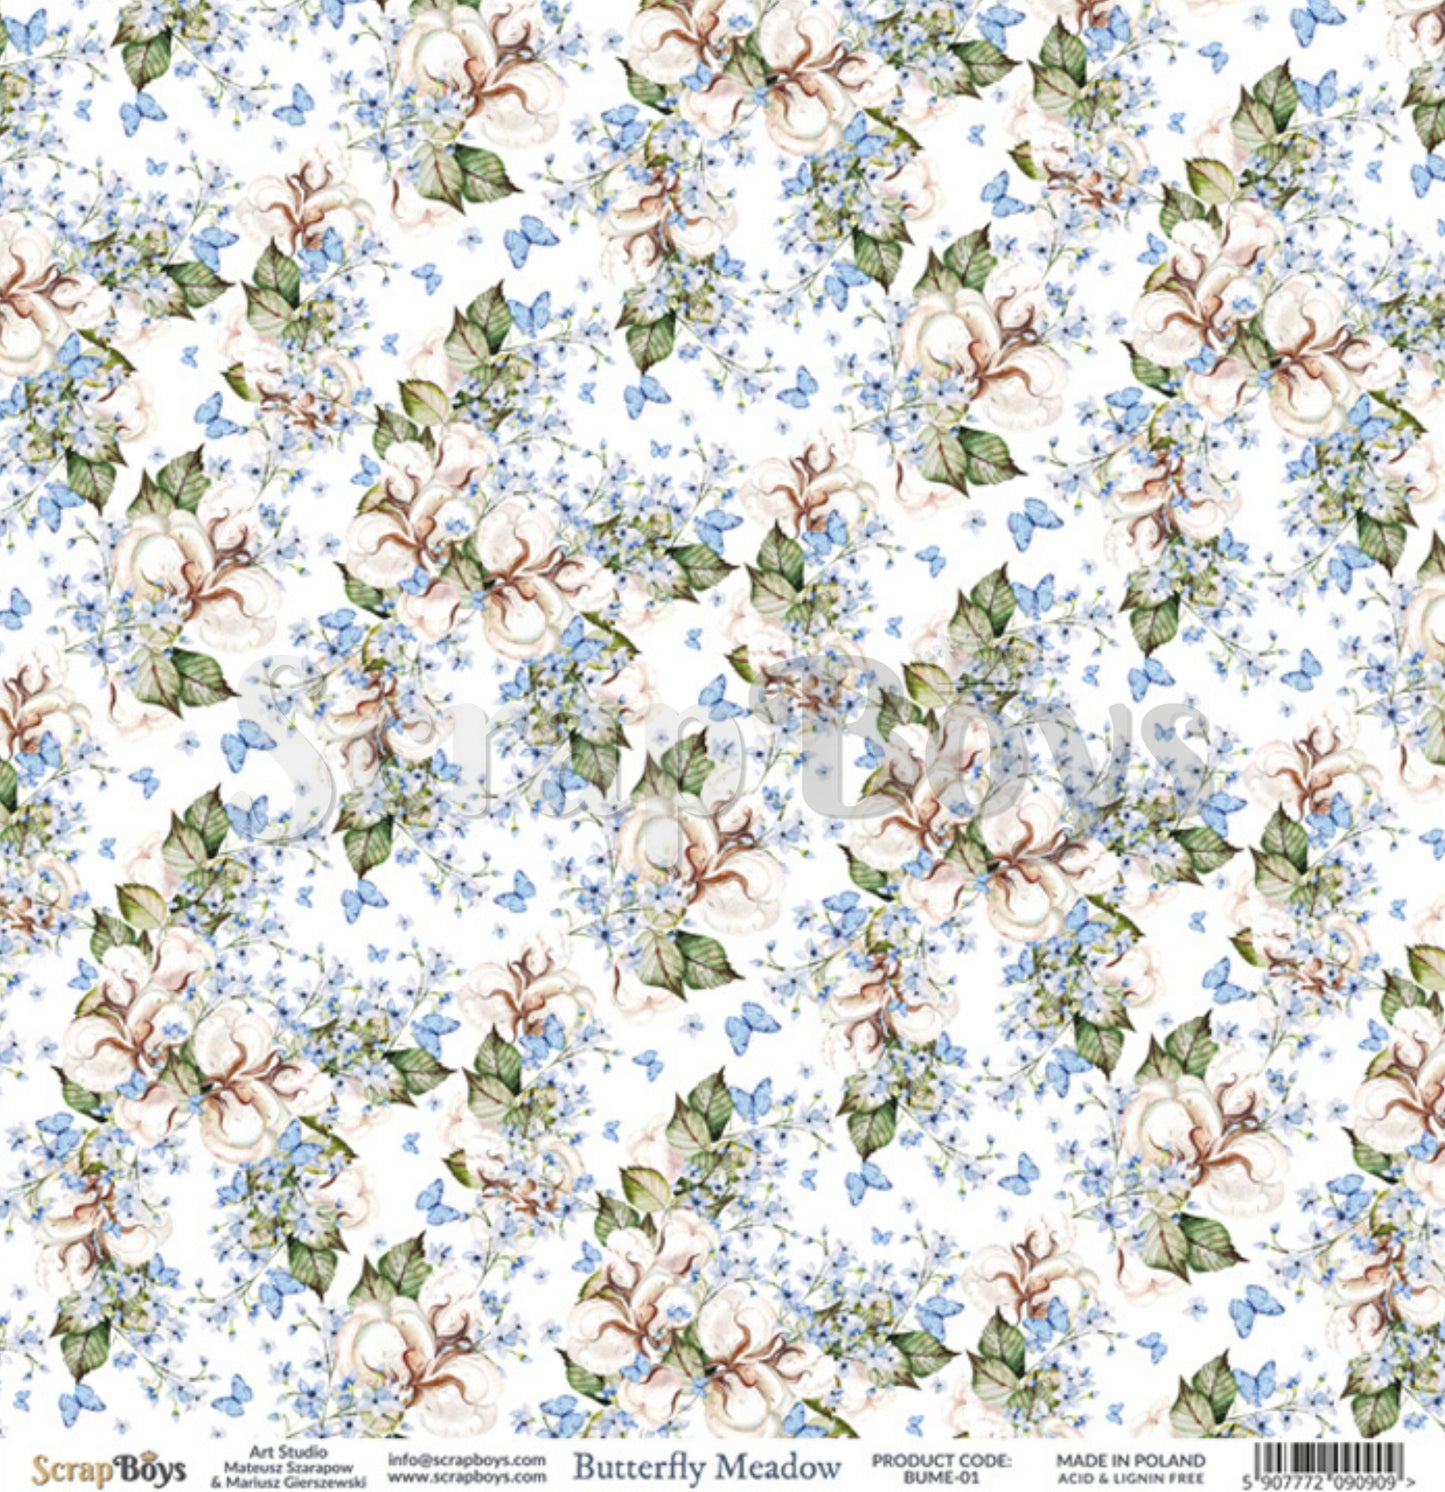 ScrapBoys - Butterfly Meadow - 12 x 12 Pattern Paper (Bume-01)